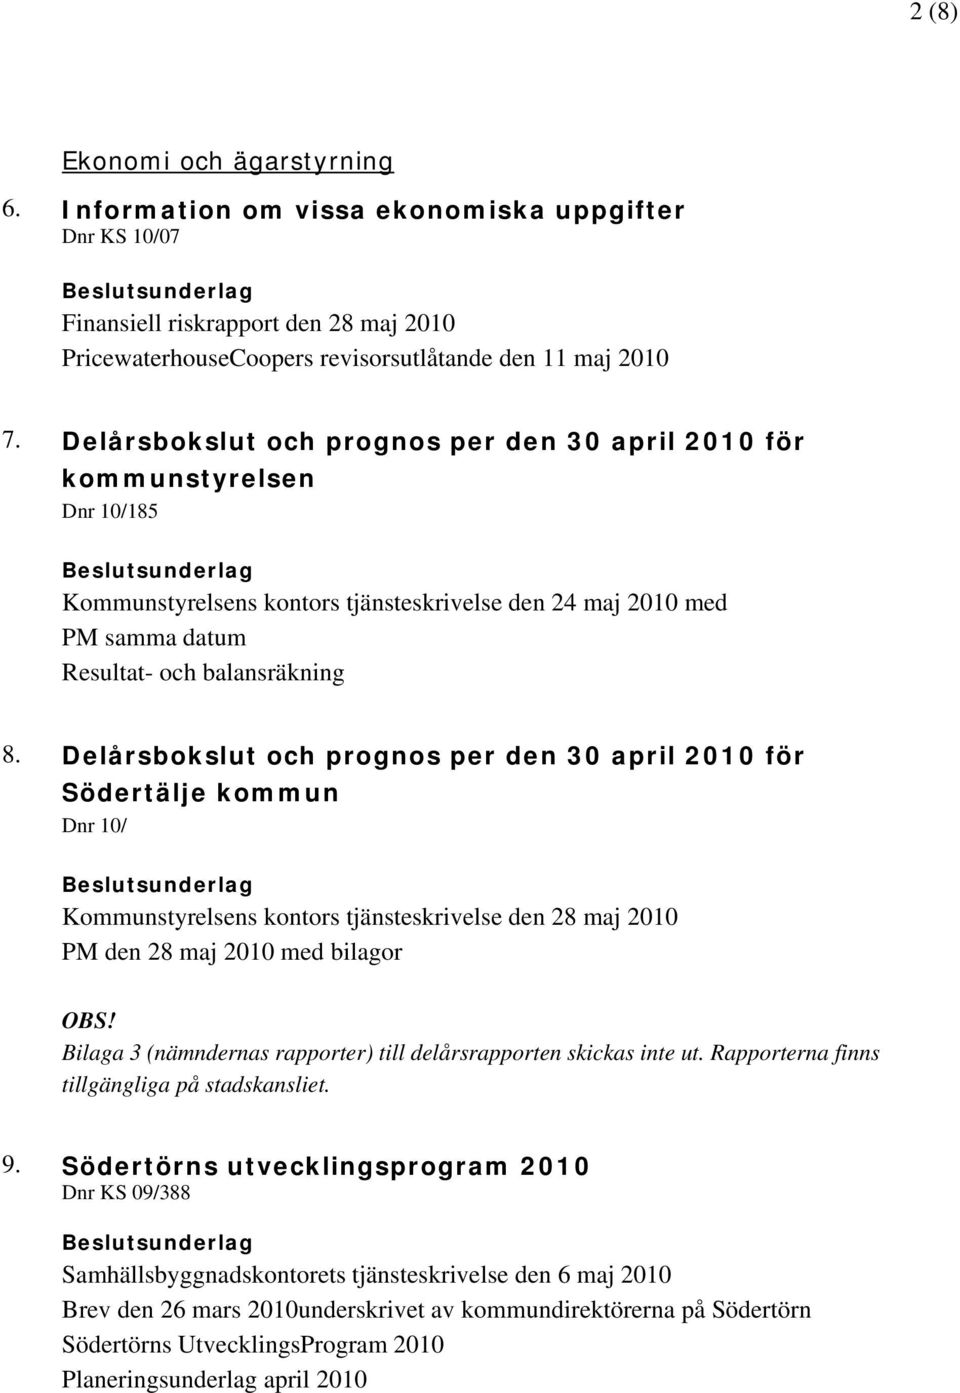 Delårsbokslut och prognos per den 30 april 2010 för Södertälje kommun Dnr 10/ Kommunstyrelsens kontors tjänsteskrivelse den 28 maj 2010 PM den 28 maj 2010 med bilagor OBS!